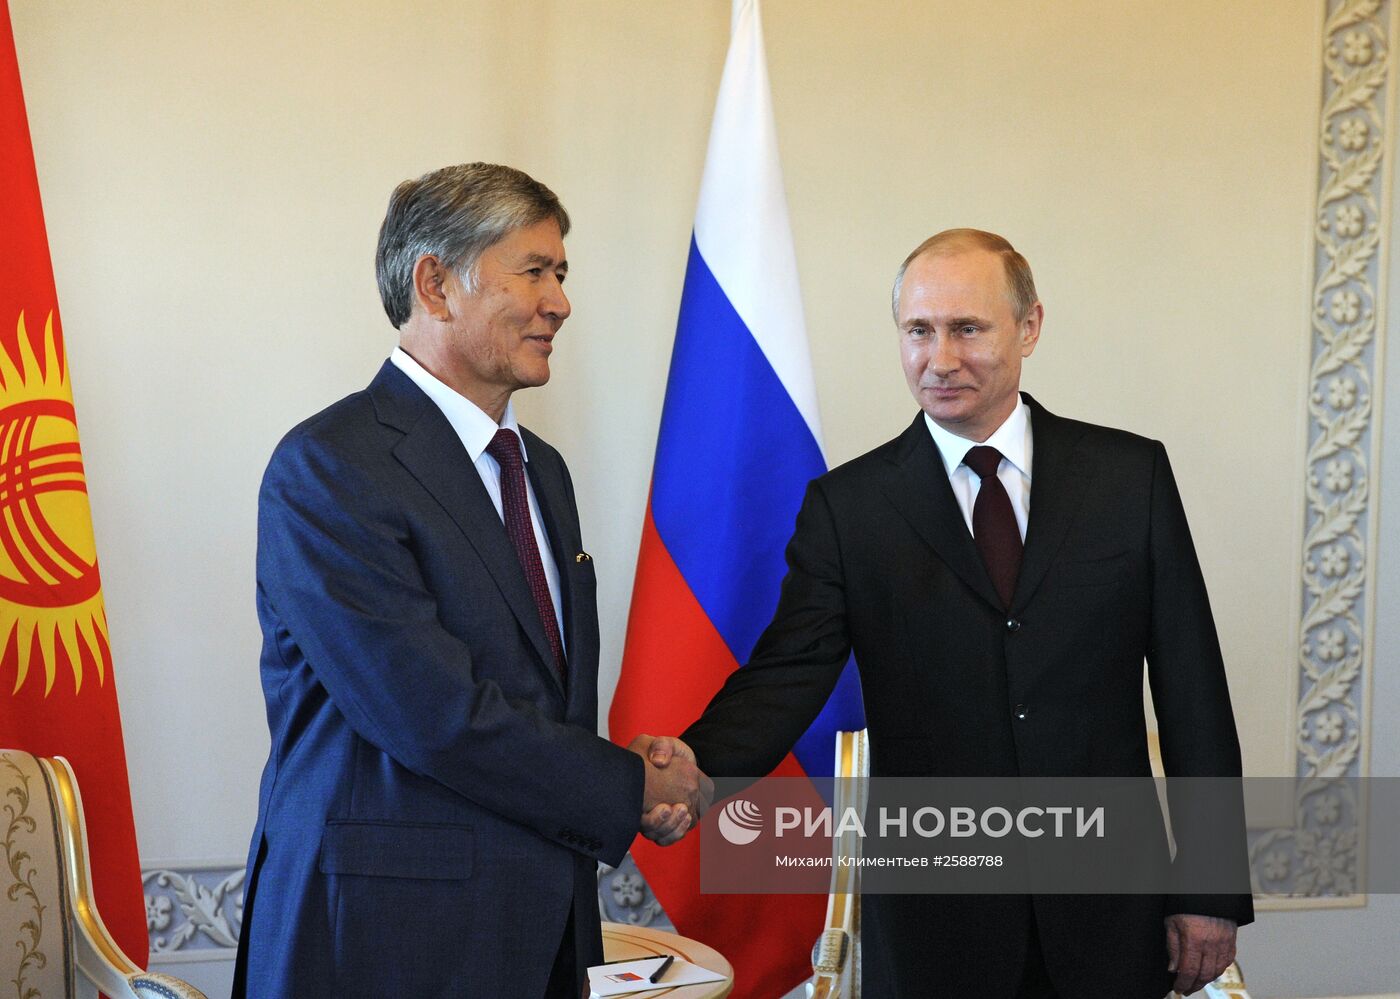 Президент РФ В.Путин встретился с главой Киргизии А.Атамбаевым в Стрельне